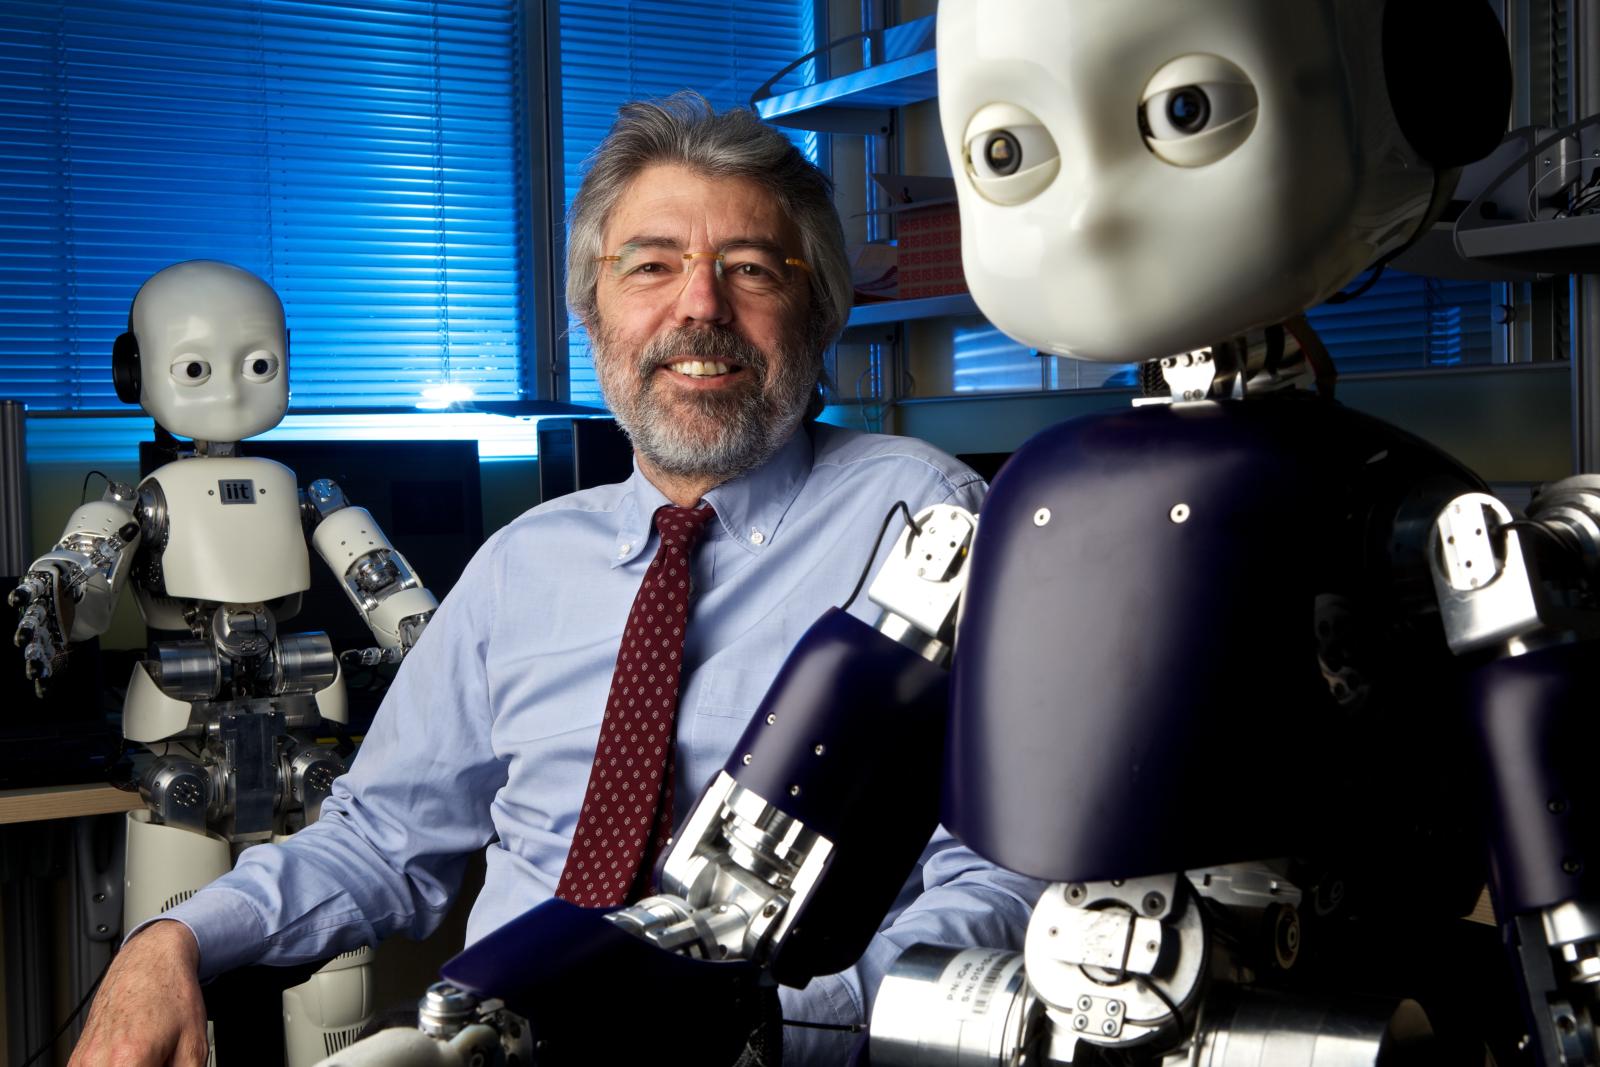 Giulio Sandini, direttore del dipartimento di Robotica, Scienze Cognitive e del Cervello dell’Istituto Italiano di Tecnologia di Genova, sorride accanto al robot antropomorfo iCub